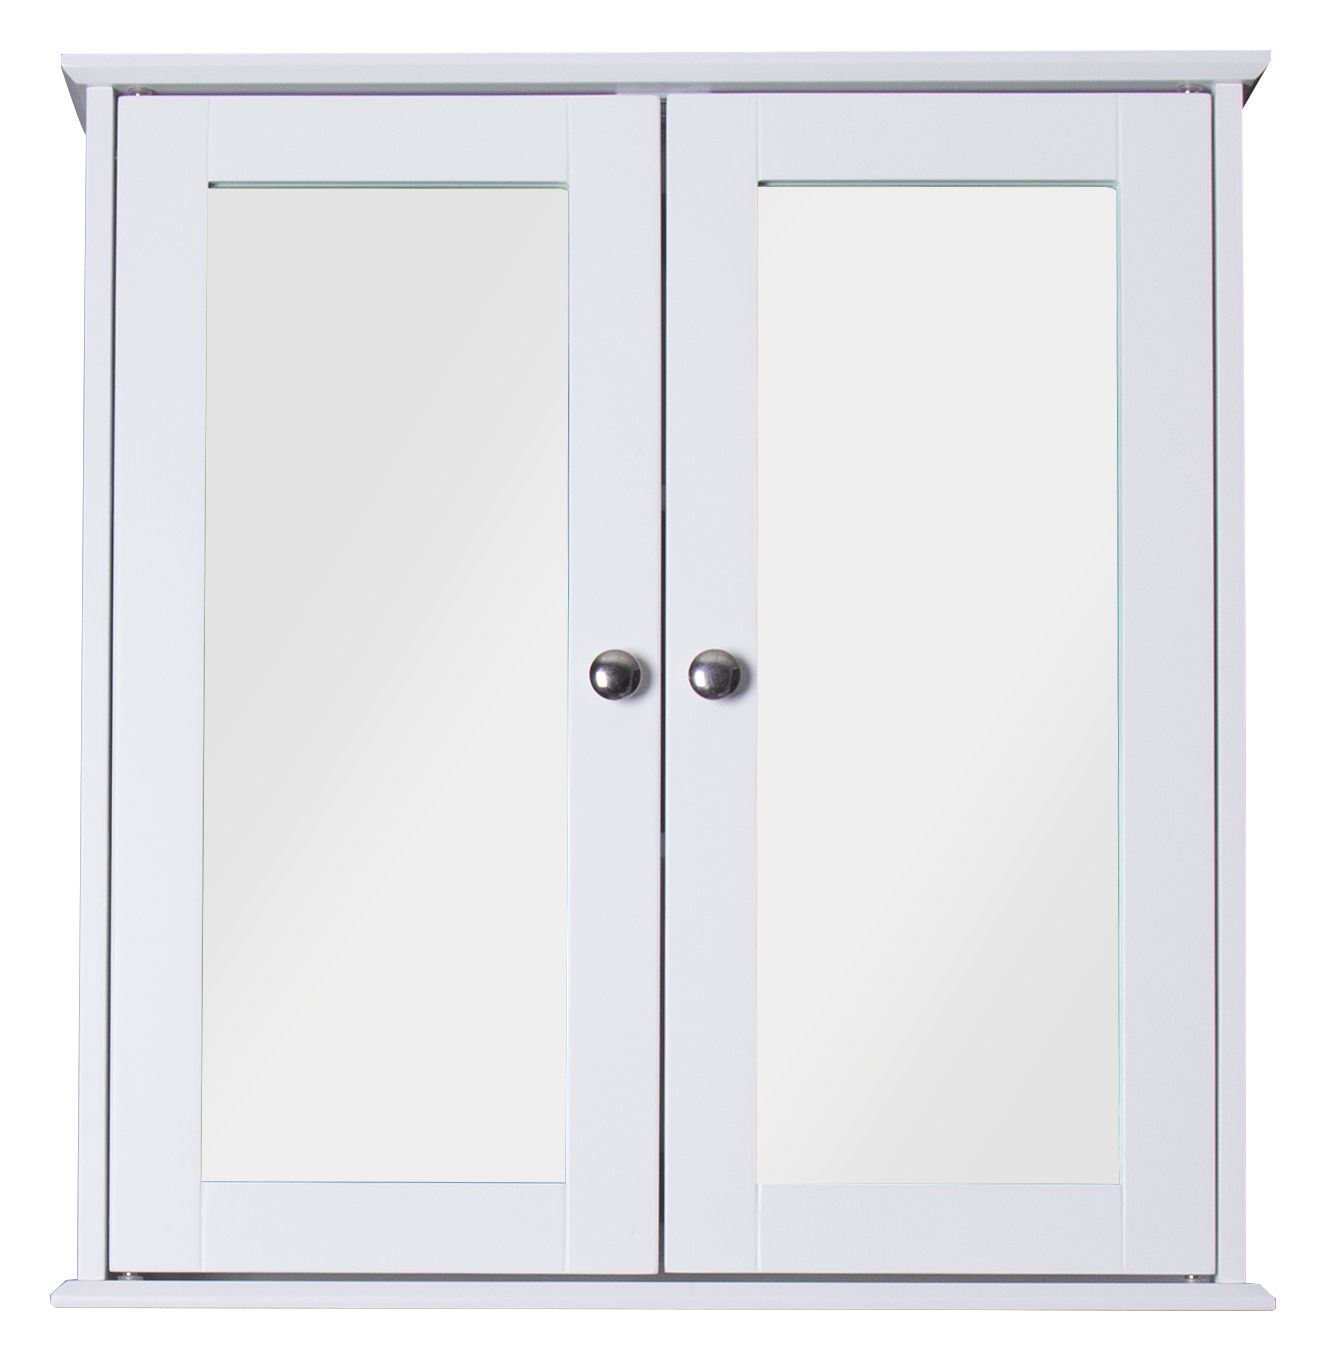 Image of Croydex Ashby Wooden Double Door Bathroom Cabinet - 500 x 130mm